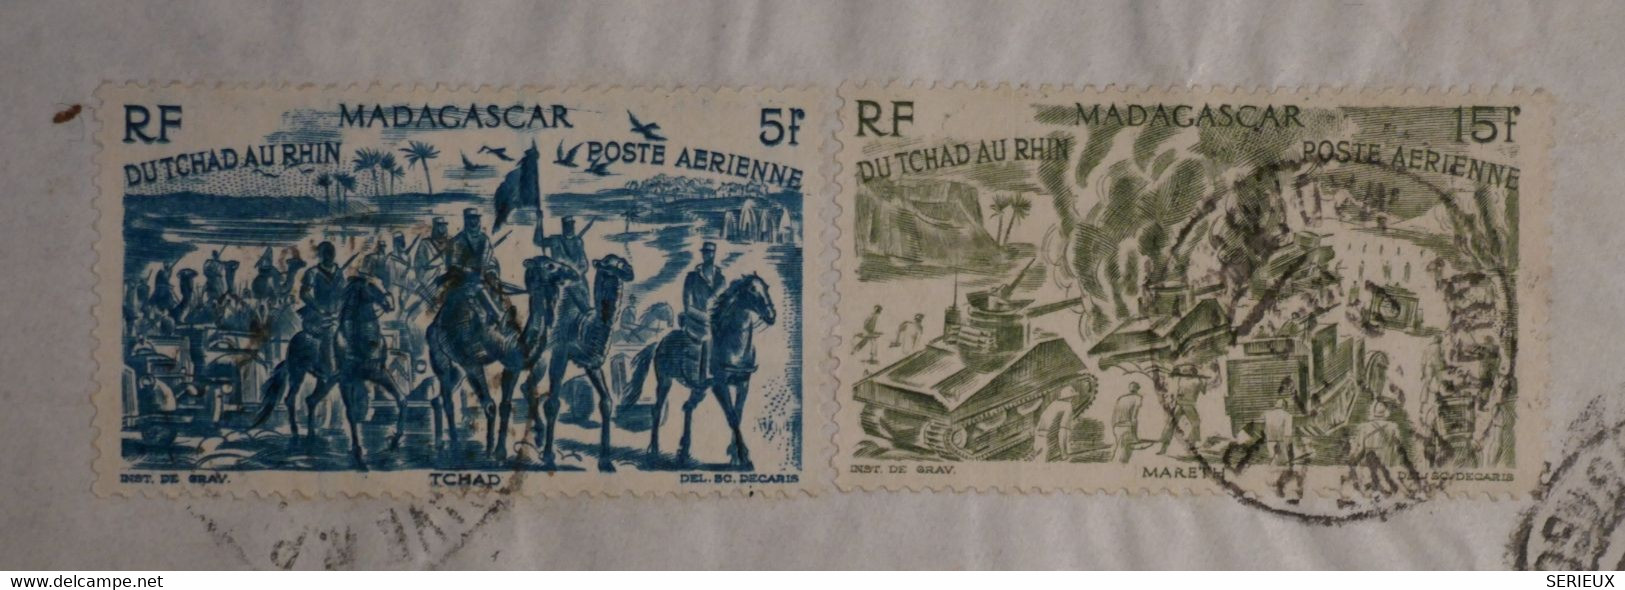 AP7 MADAGASCAR   BELLE LETTRE 1959 PAR AVIONB  POUR RIBERAC   FRANCE  +N°68 + +AFFRANCH.INTERESSANT - Posta Aerea